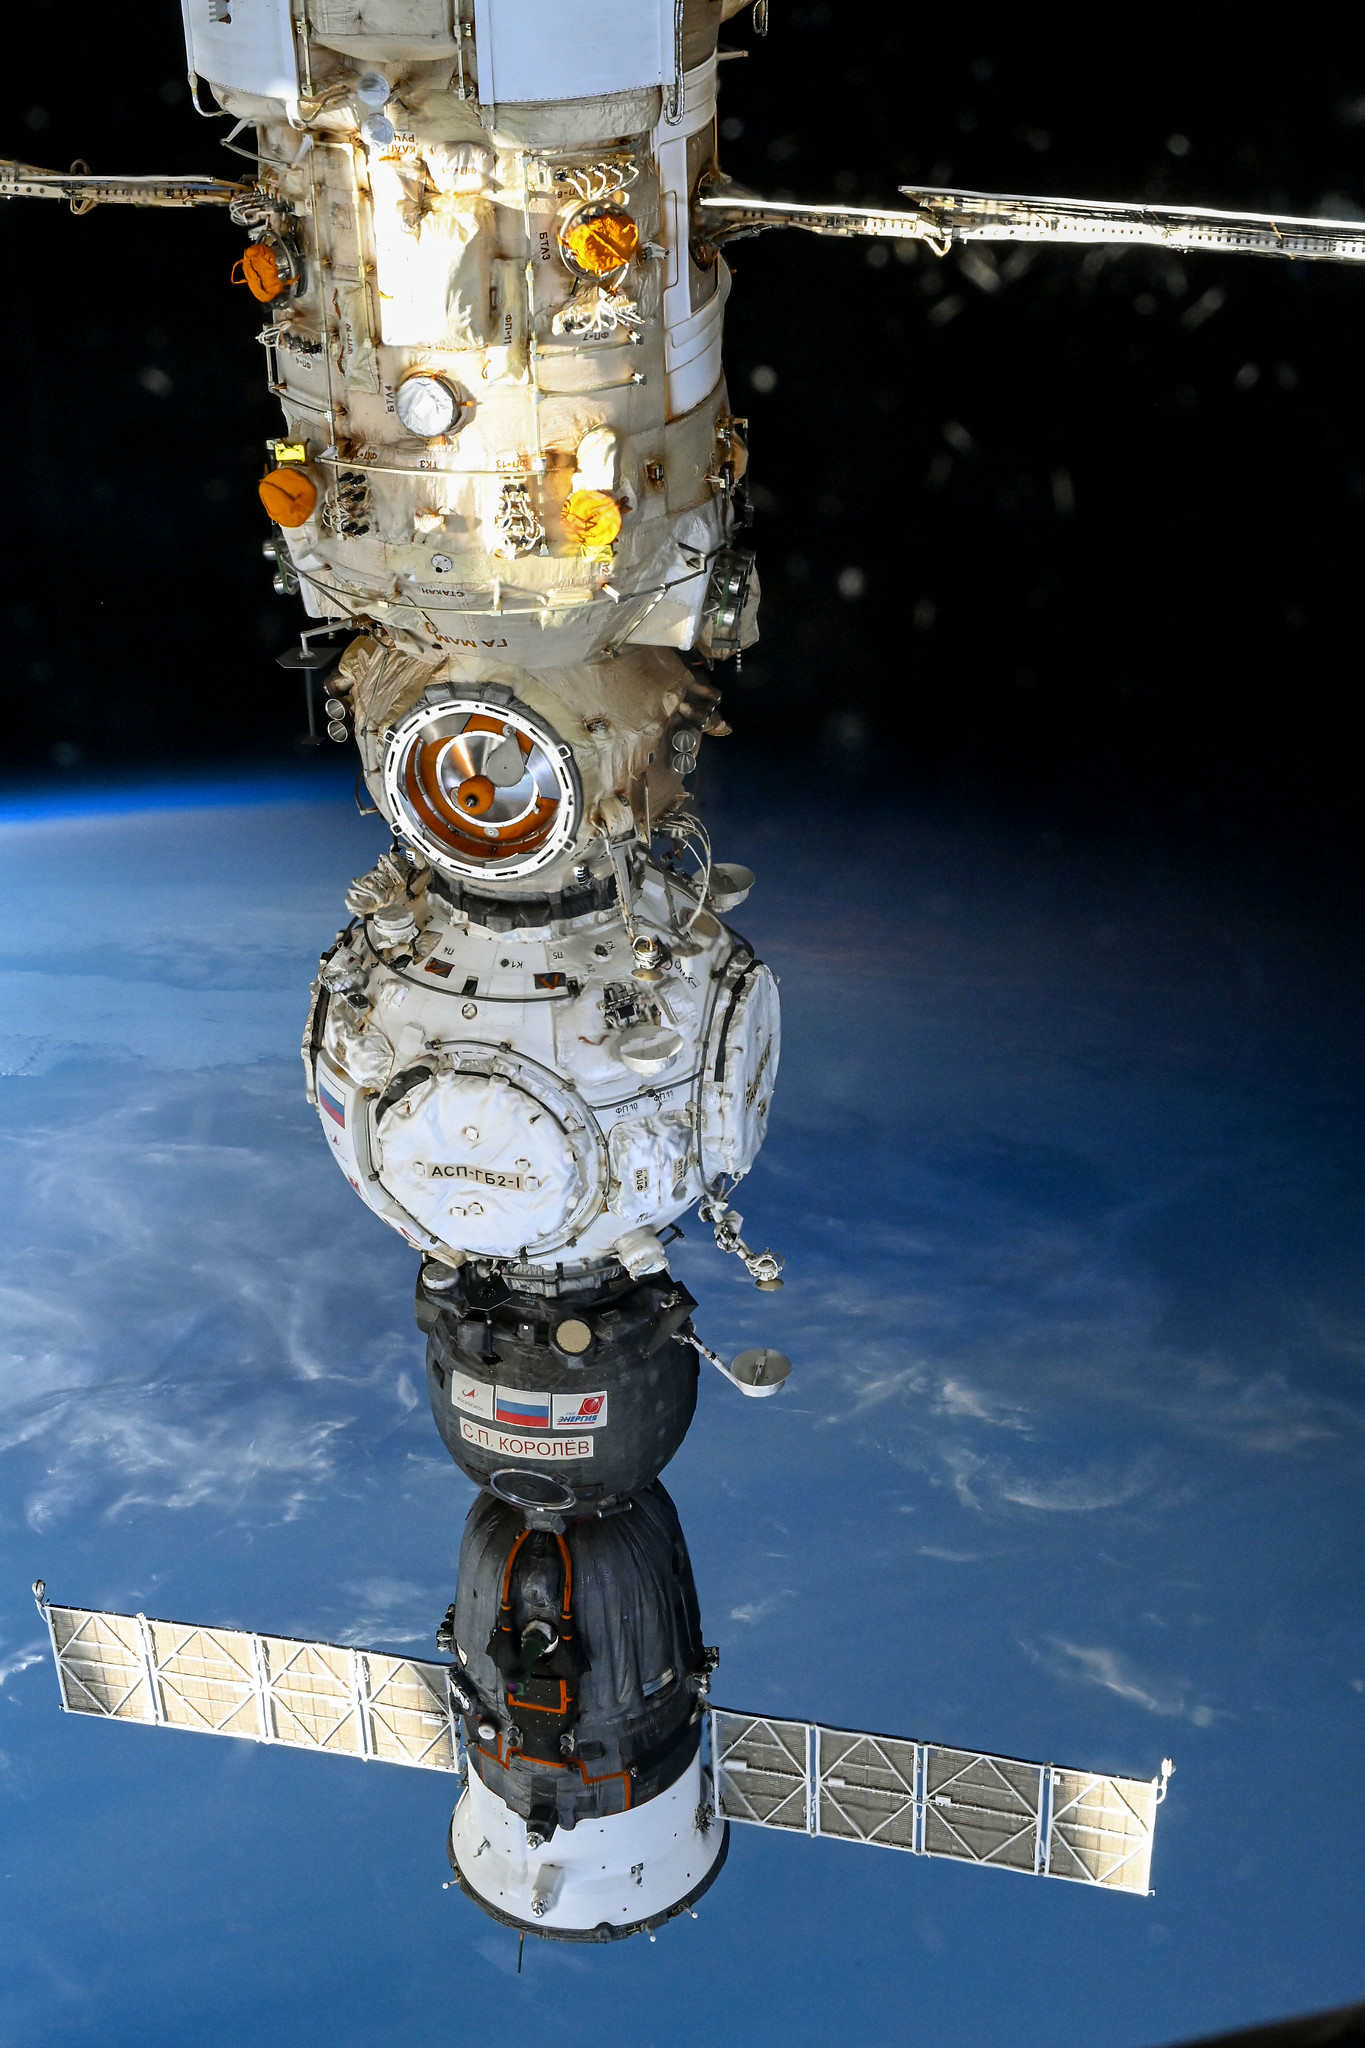 Vidéo. Décollage de la fusée Soyouz qui emmène trois hommes vers l'ISS